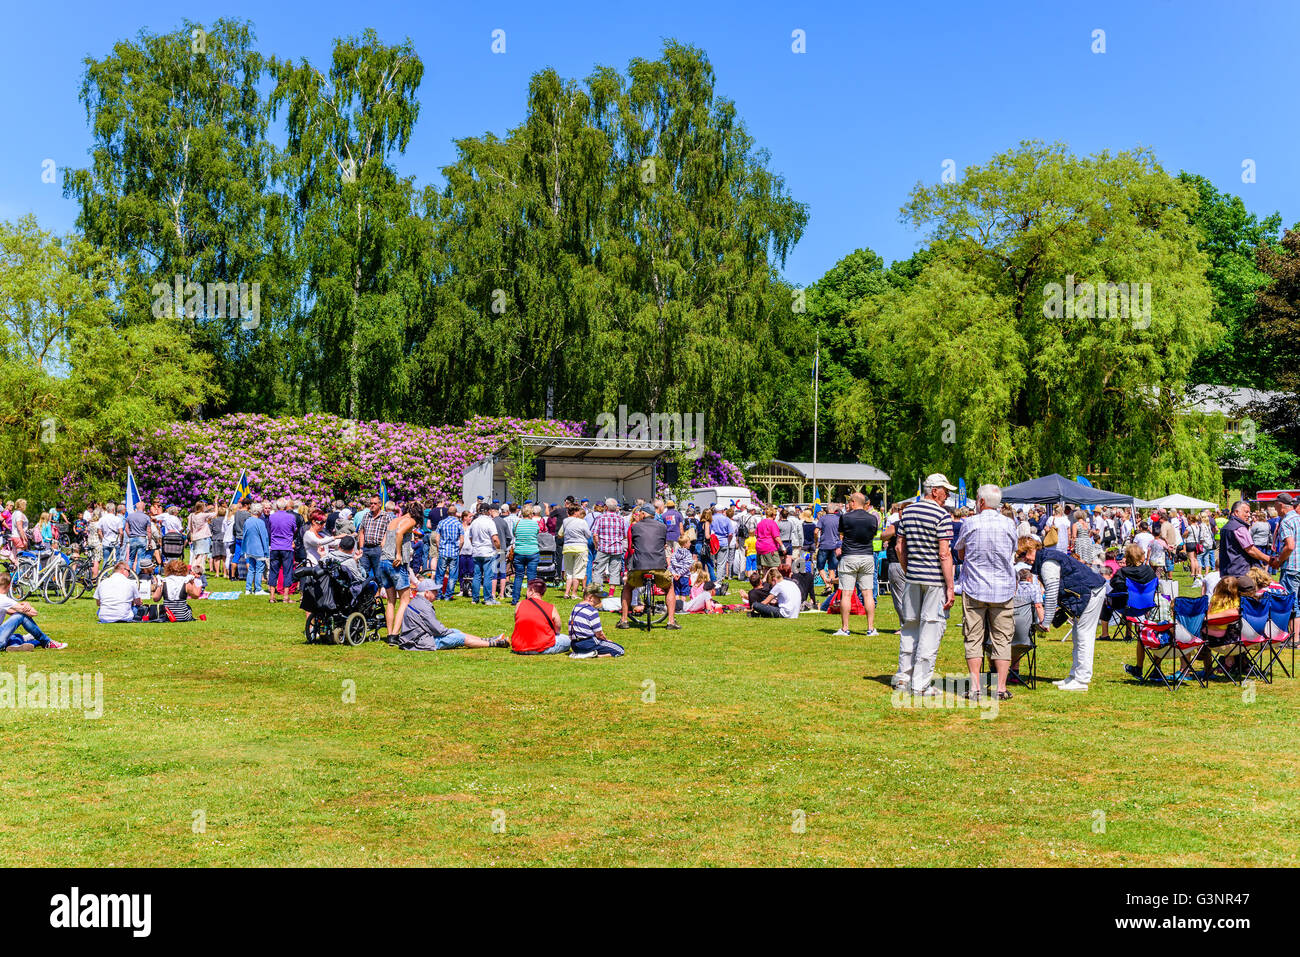 Ronneby, Schweden - 6. Juni 2016: Der schwedische Nationalfeiertag im öffentlichen Park. Menschenmenge versammelte sich im Park zu feiern. Stockfoto